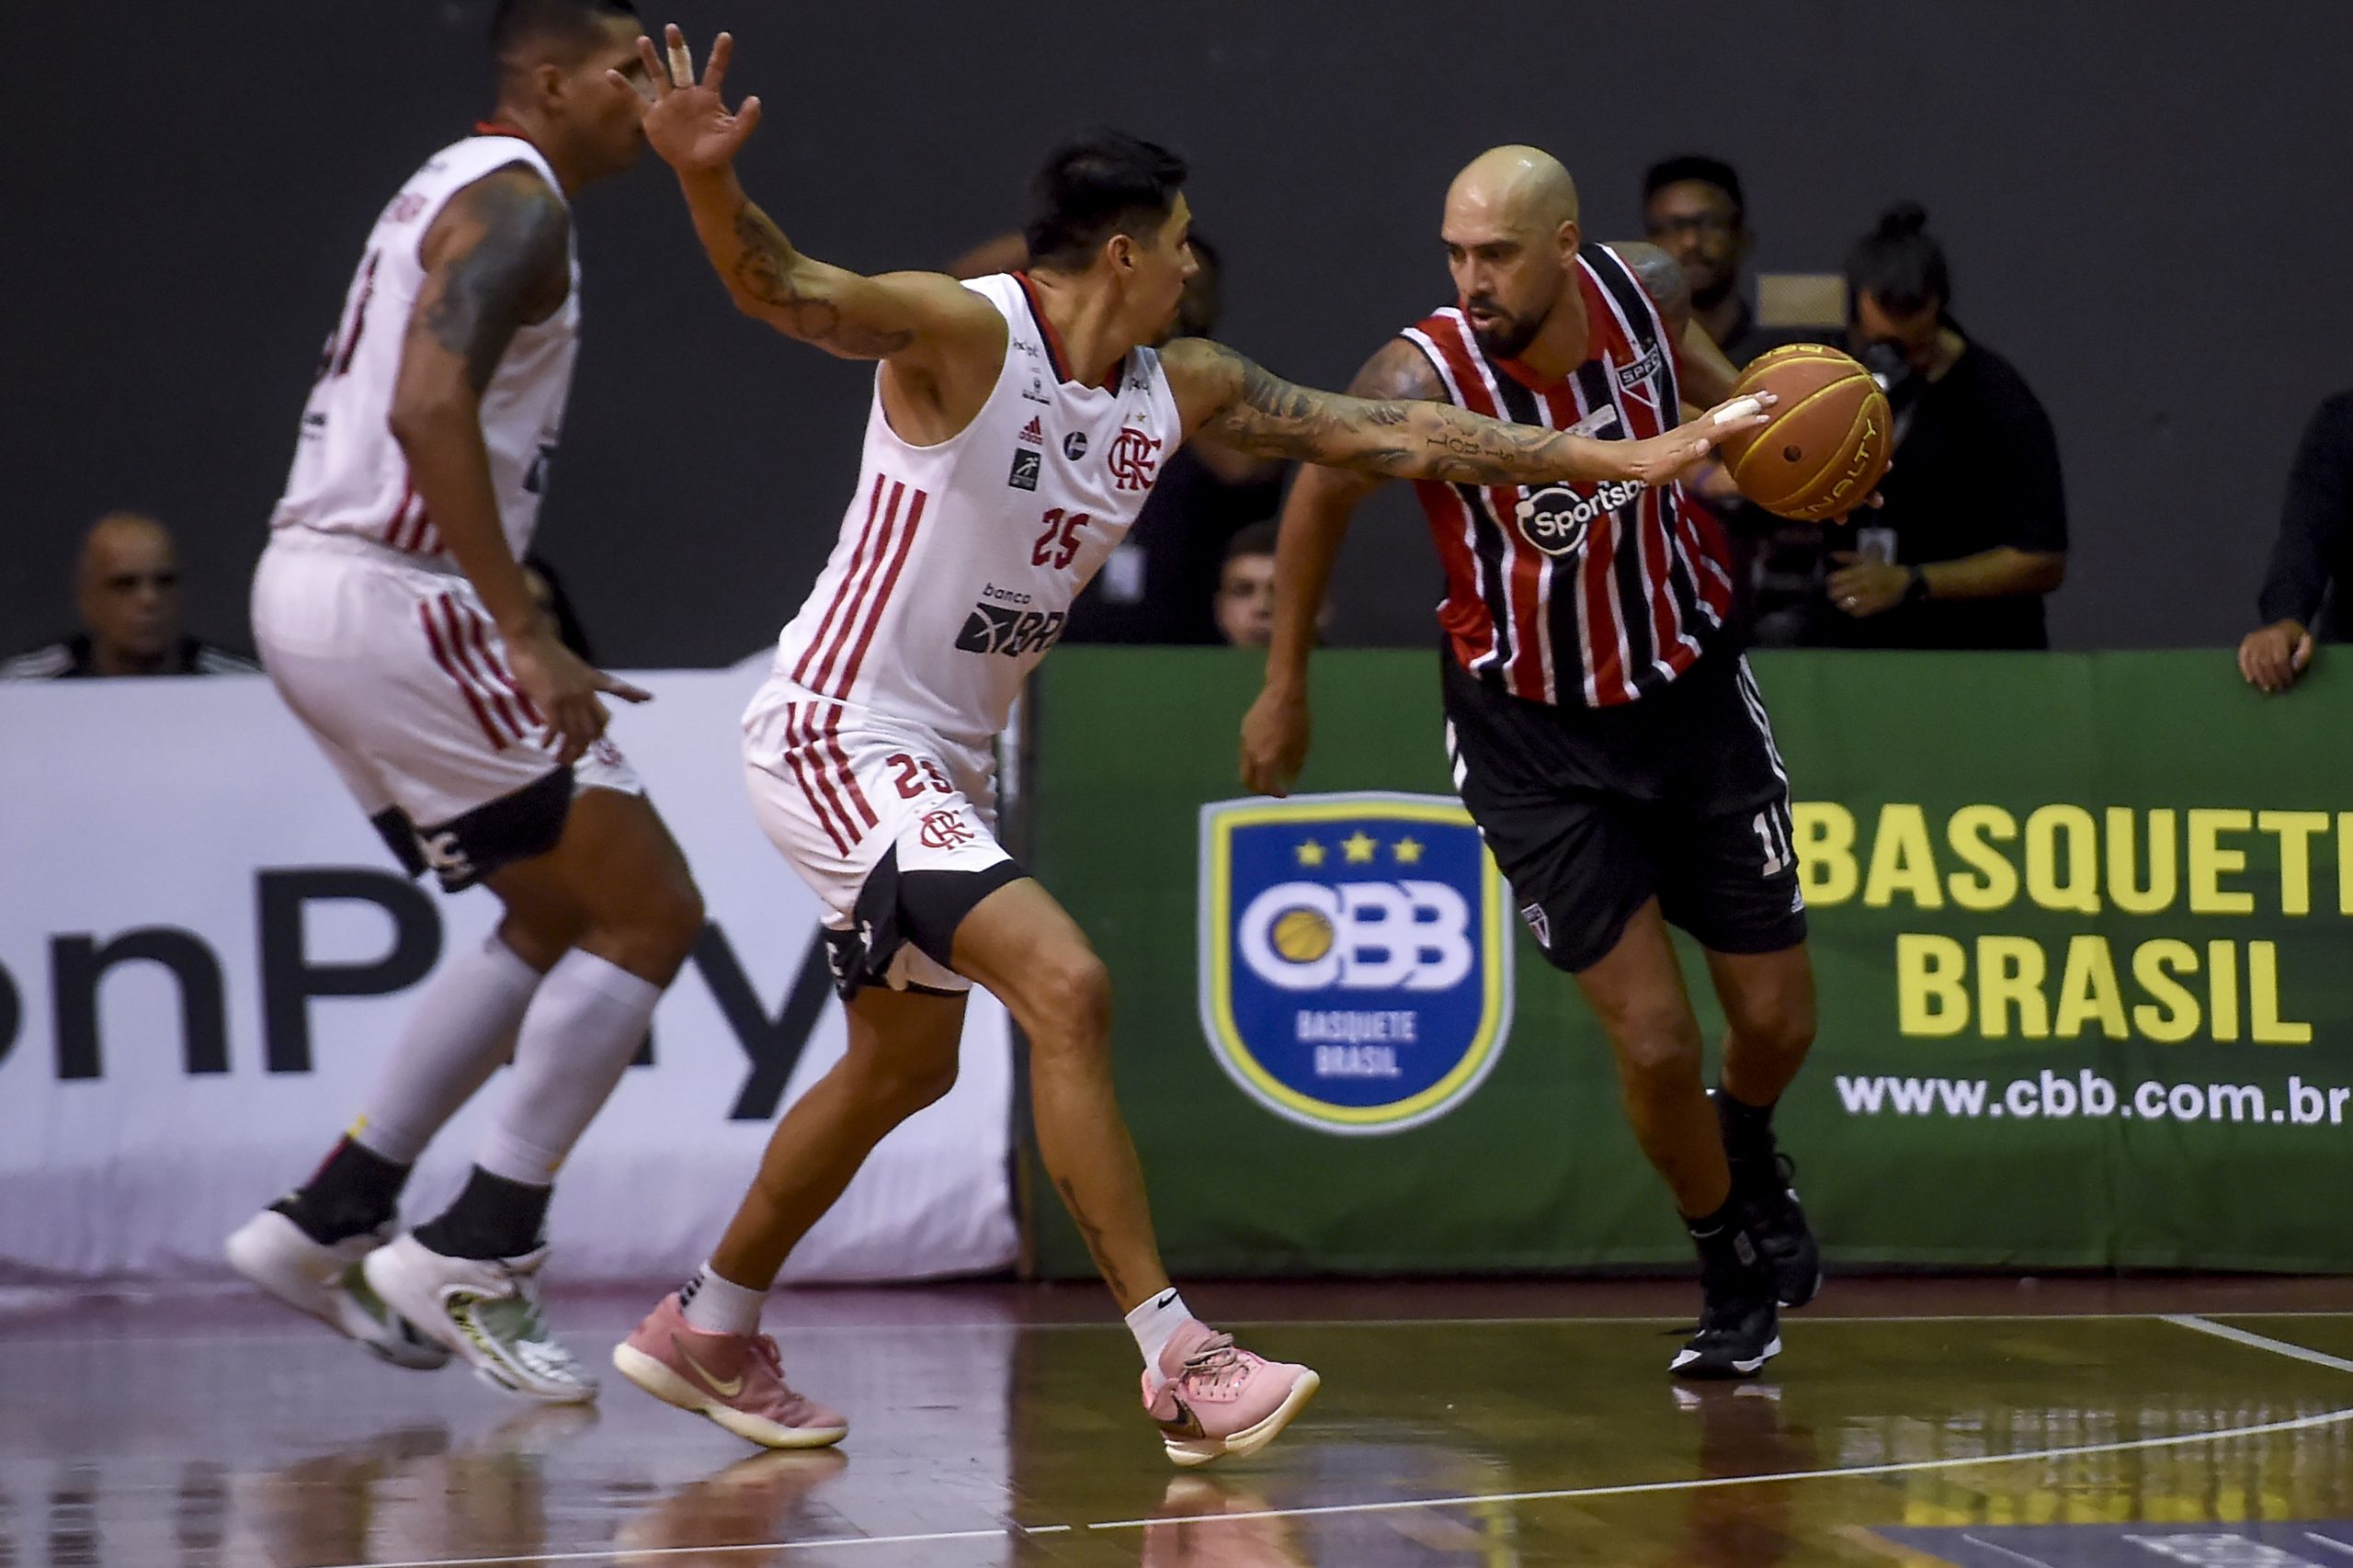 Flamengo pode jogar Brasileiro de Basquete da CBB e afirma que NBB não  banca despesas dos clubes - Máquina do Esporte